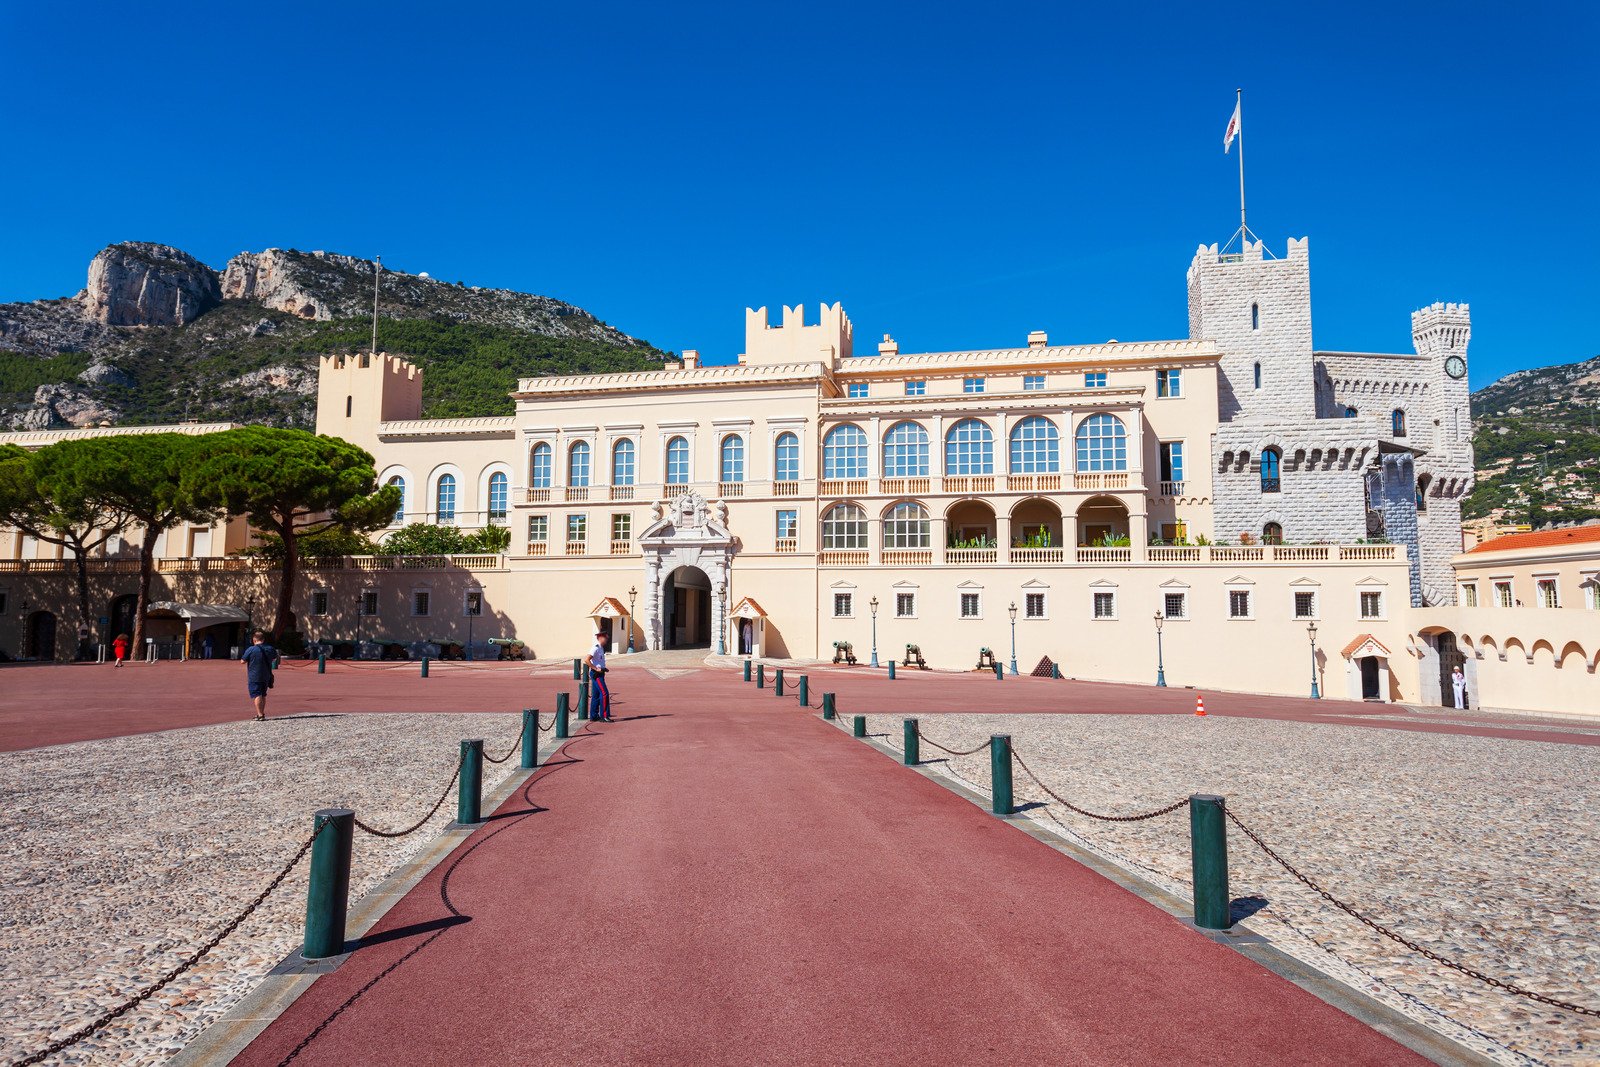 Cung điện Hoàng gia Monaco nguy nga, bề thế